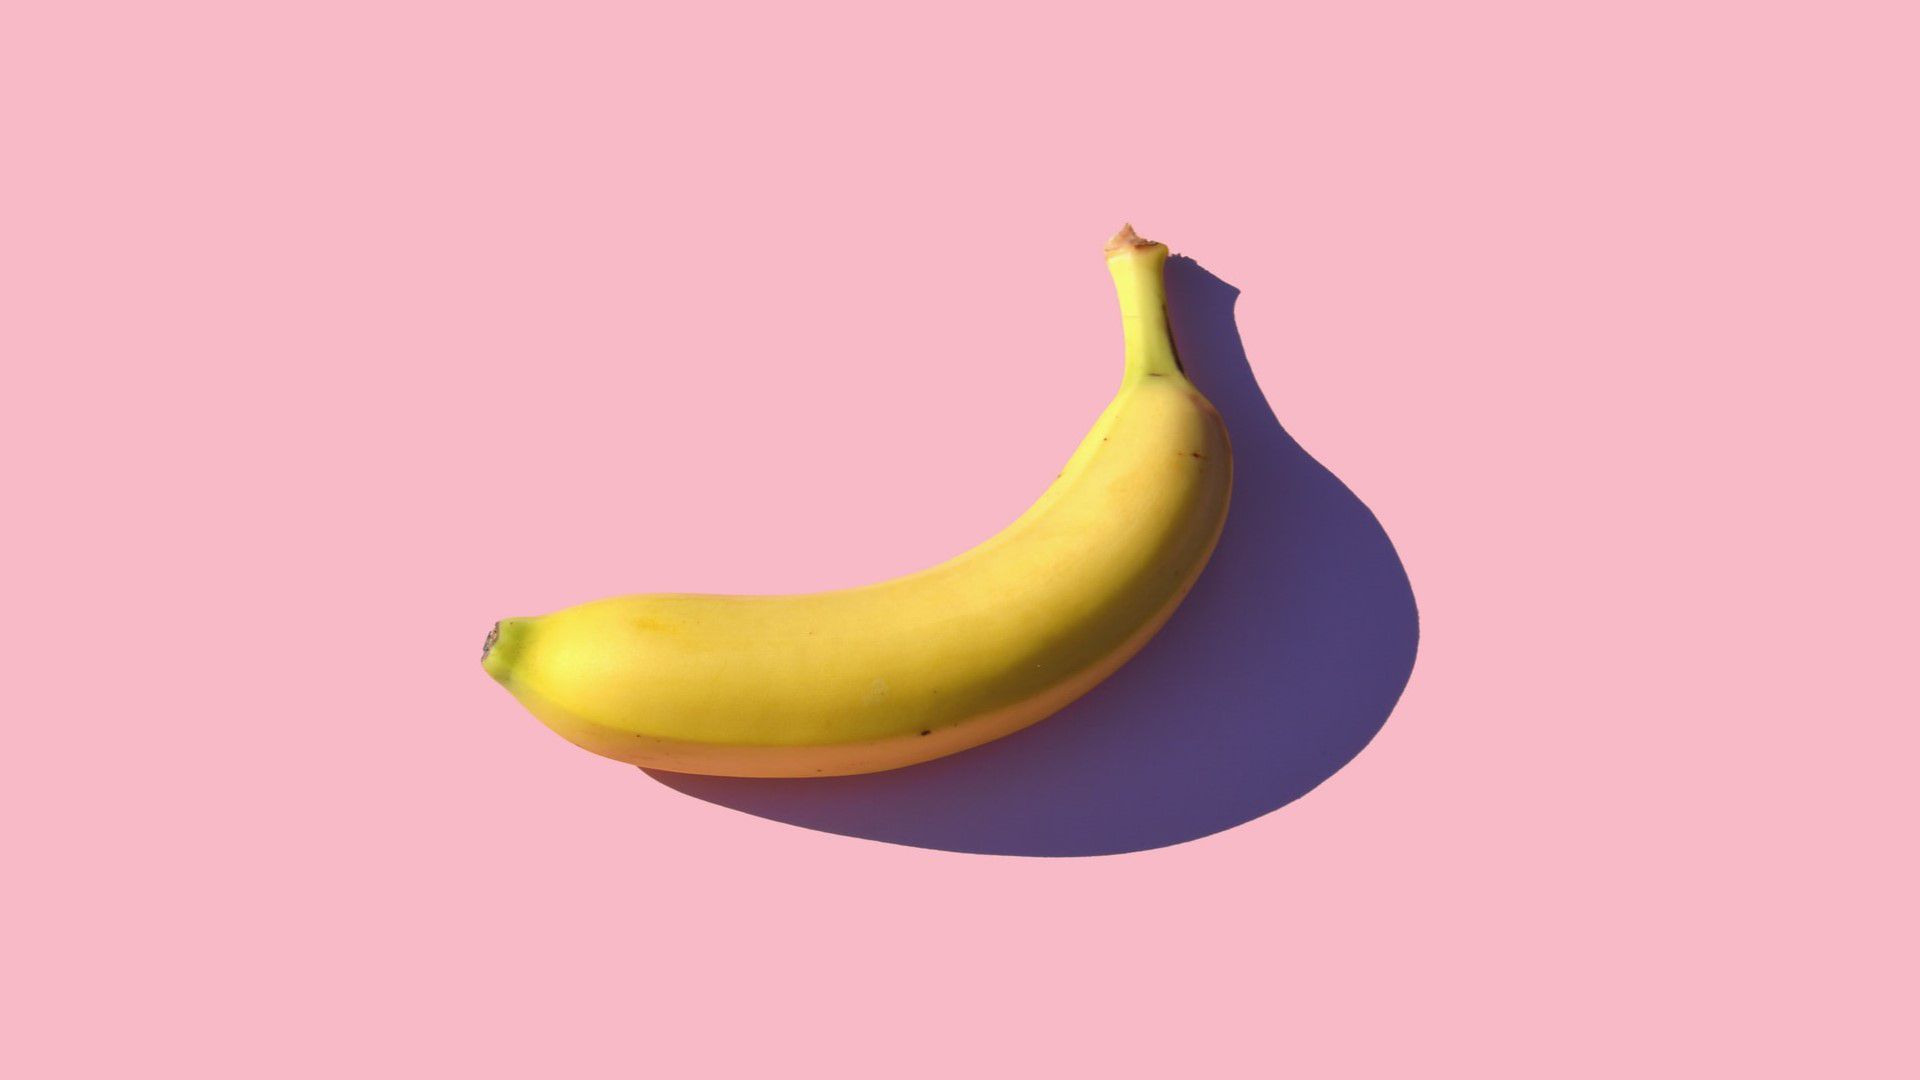 Bedroht ein Pilz die Existenz unserer Banane?